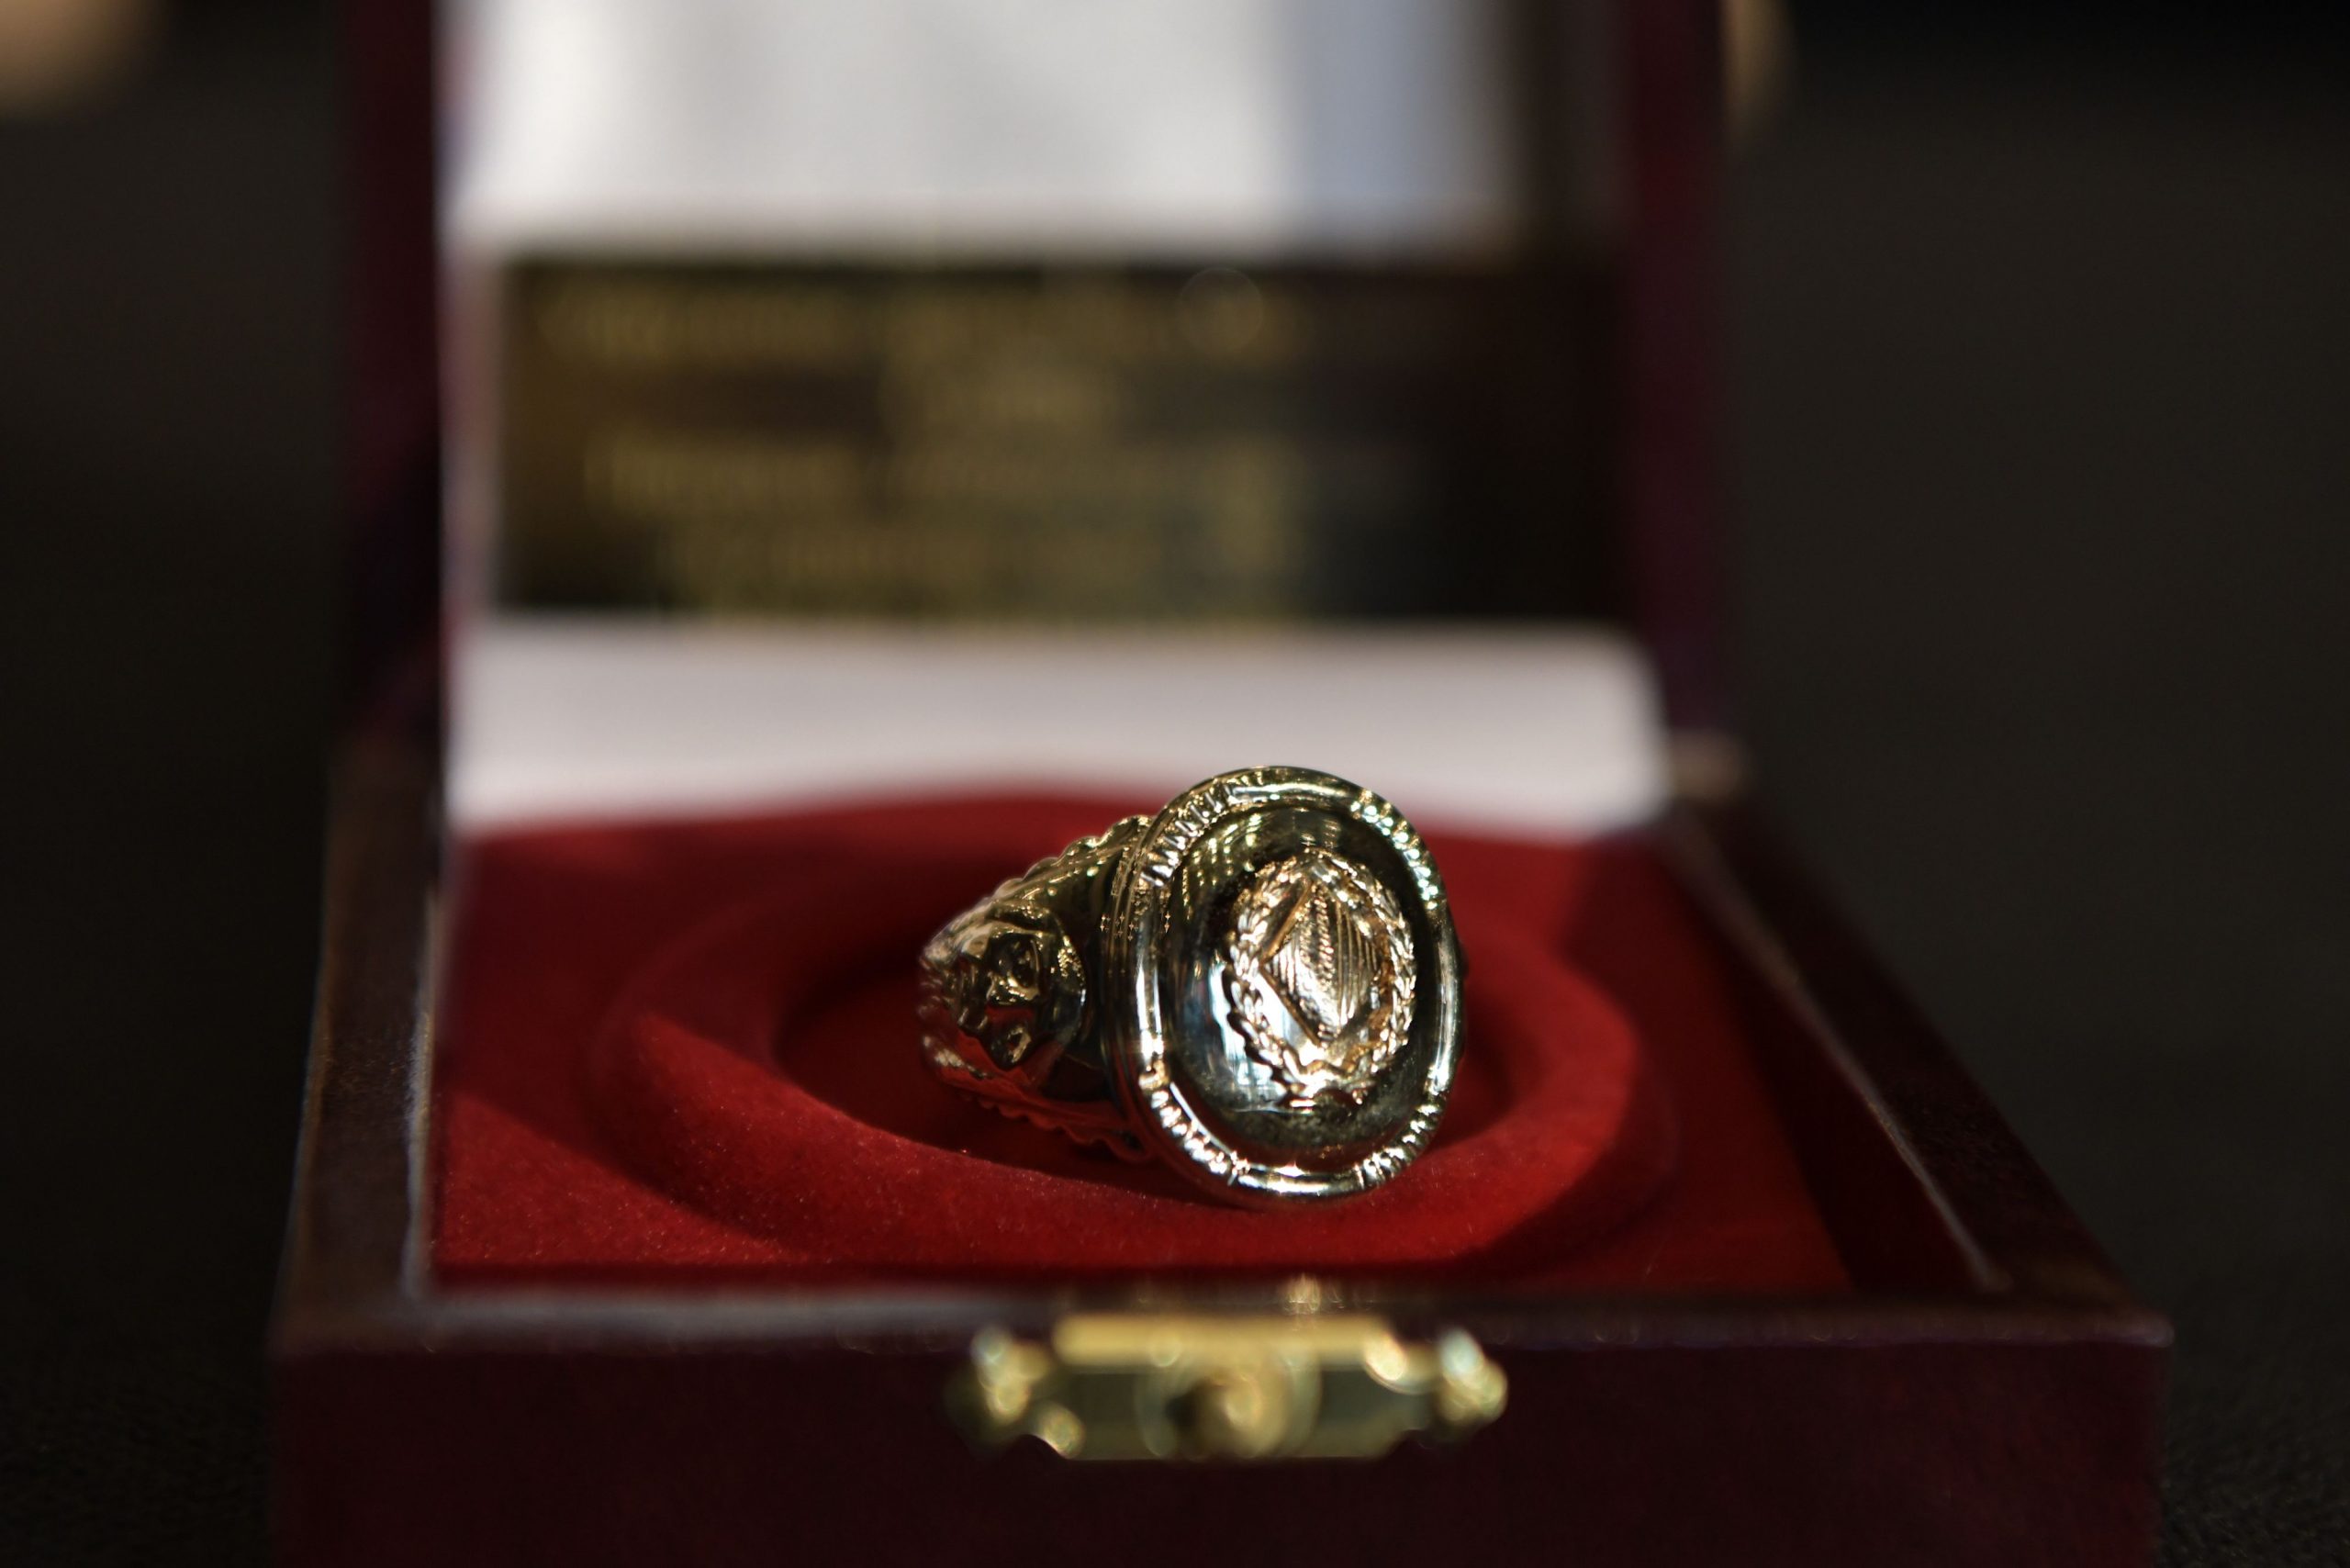 urucenje Dobricinog prstena, nagrade za zivotno delo koje je postuhmno dodeljeno Milanu Lanetu Gutovicu